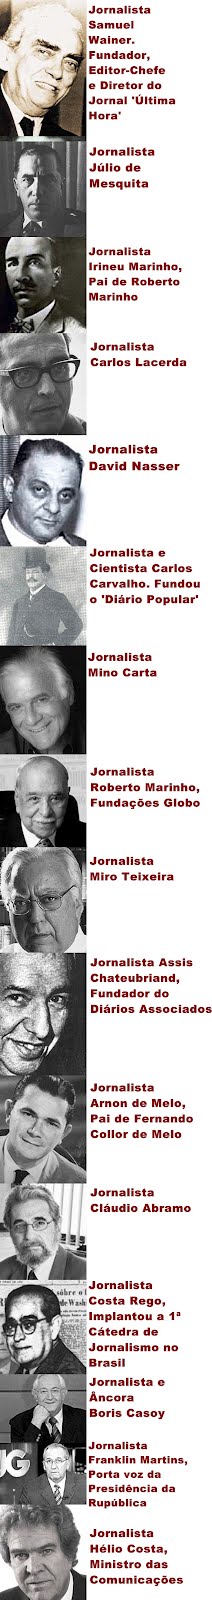 Galeria dos Famosos Jornalistas sem Diploma.